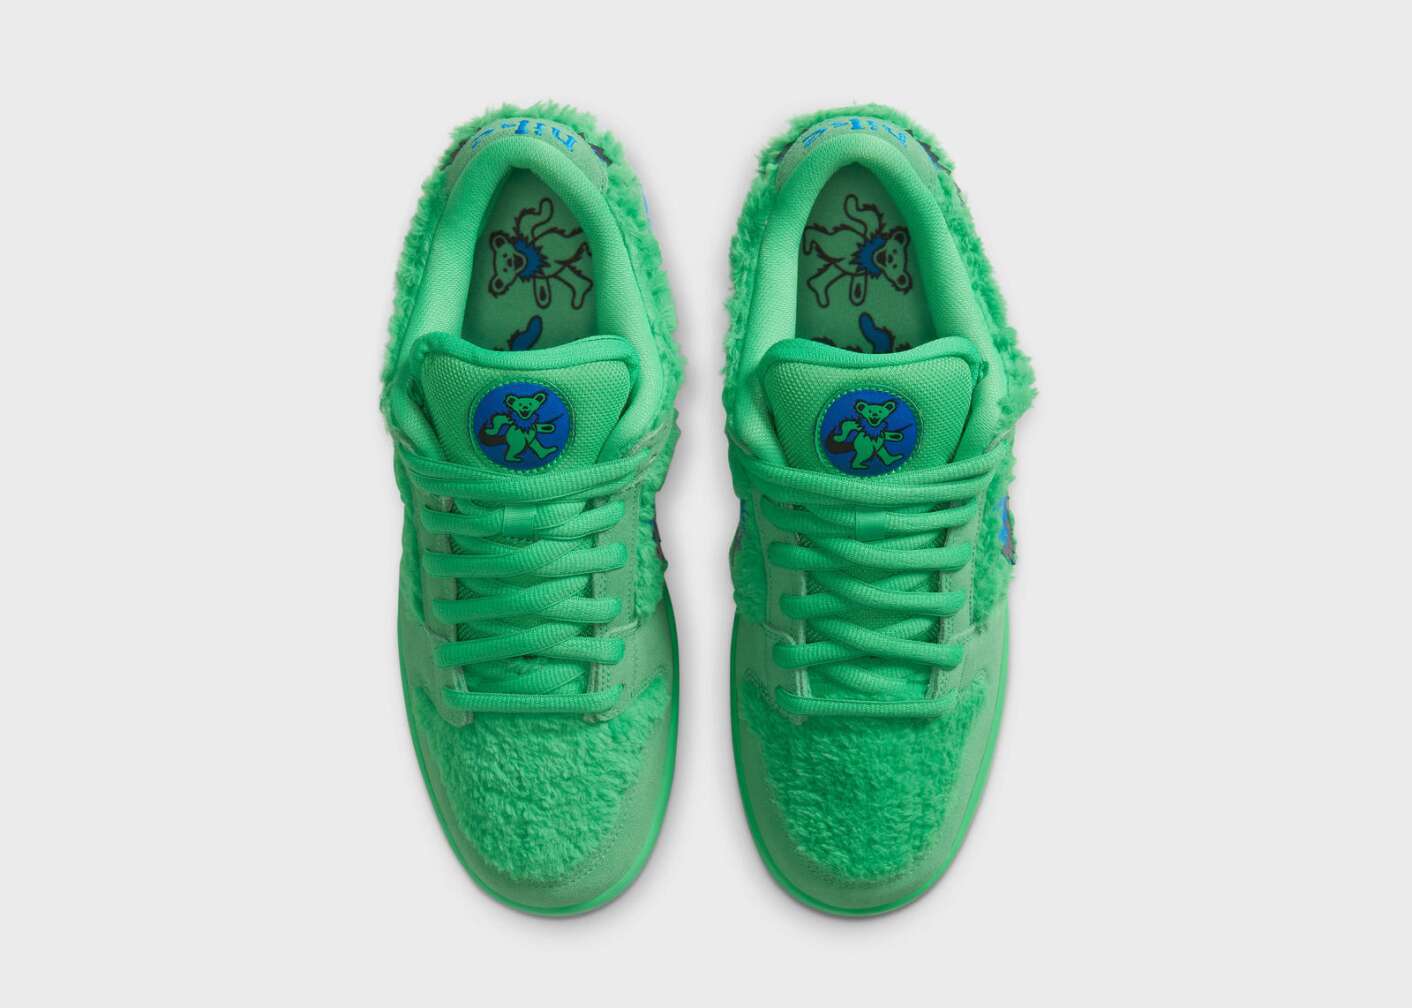 Grüne Nike-Schuhe